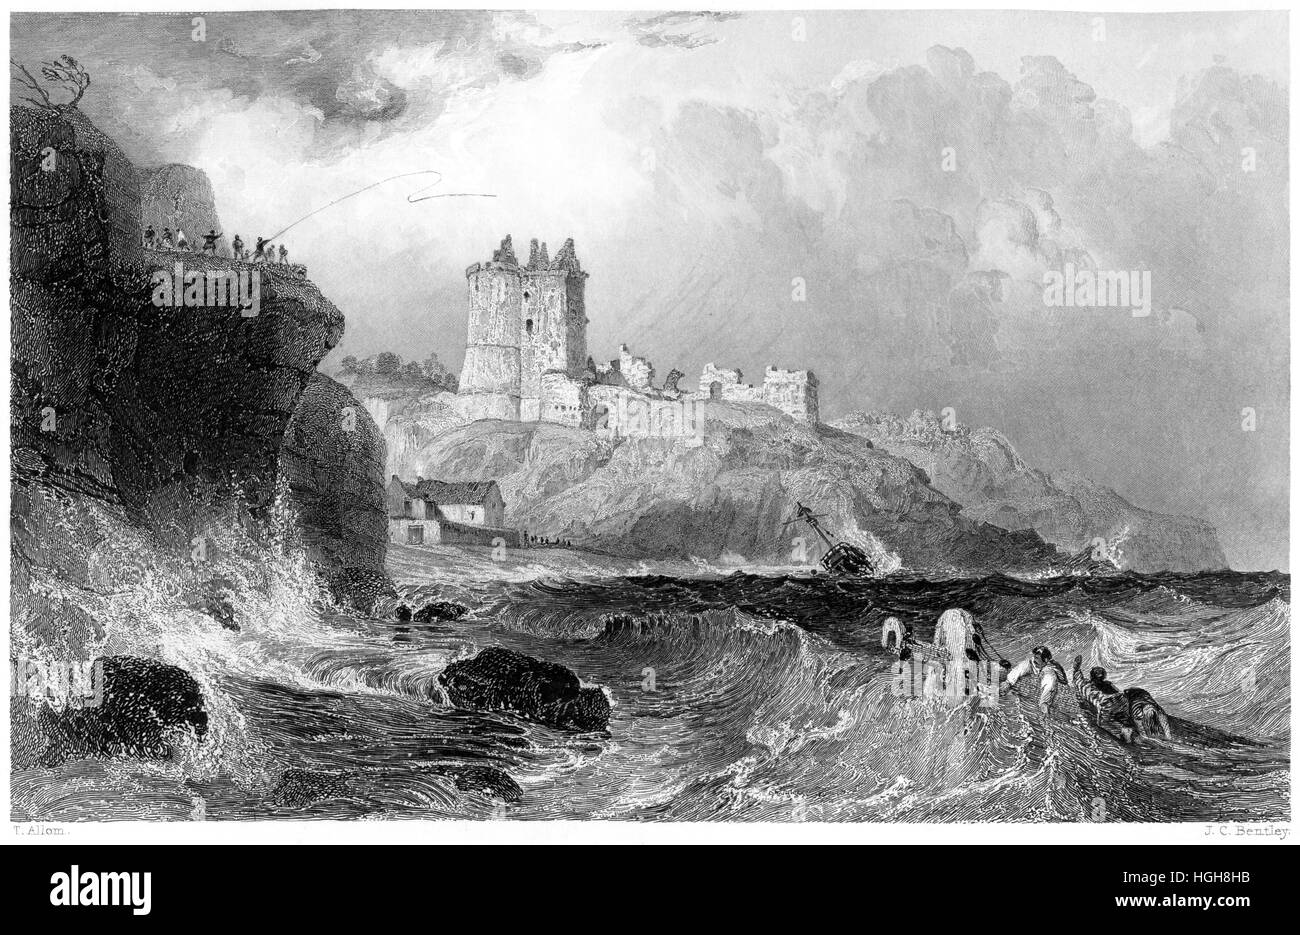 Eine Gravur von Ravenscraig Castle in der Nähe von Kirkcaldy, Fifeshire gescannt in hoher Auflösung aus einem Buch, das 1859 gedruckt wurde. Glaubte, dass es keine Urheberrechte gibt Stockfoto